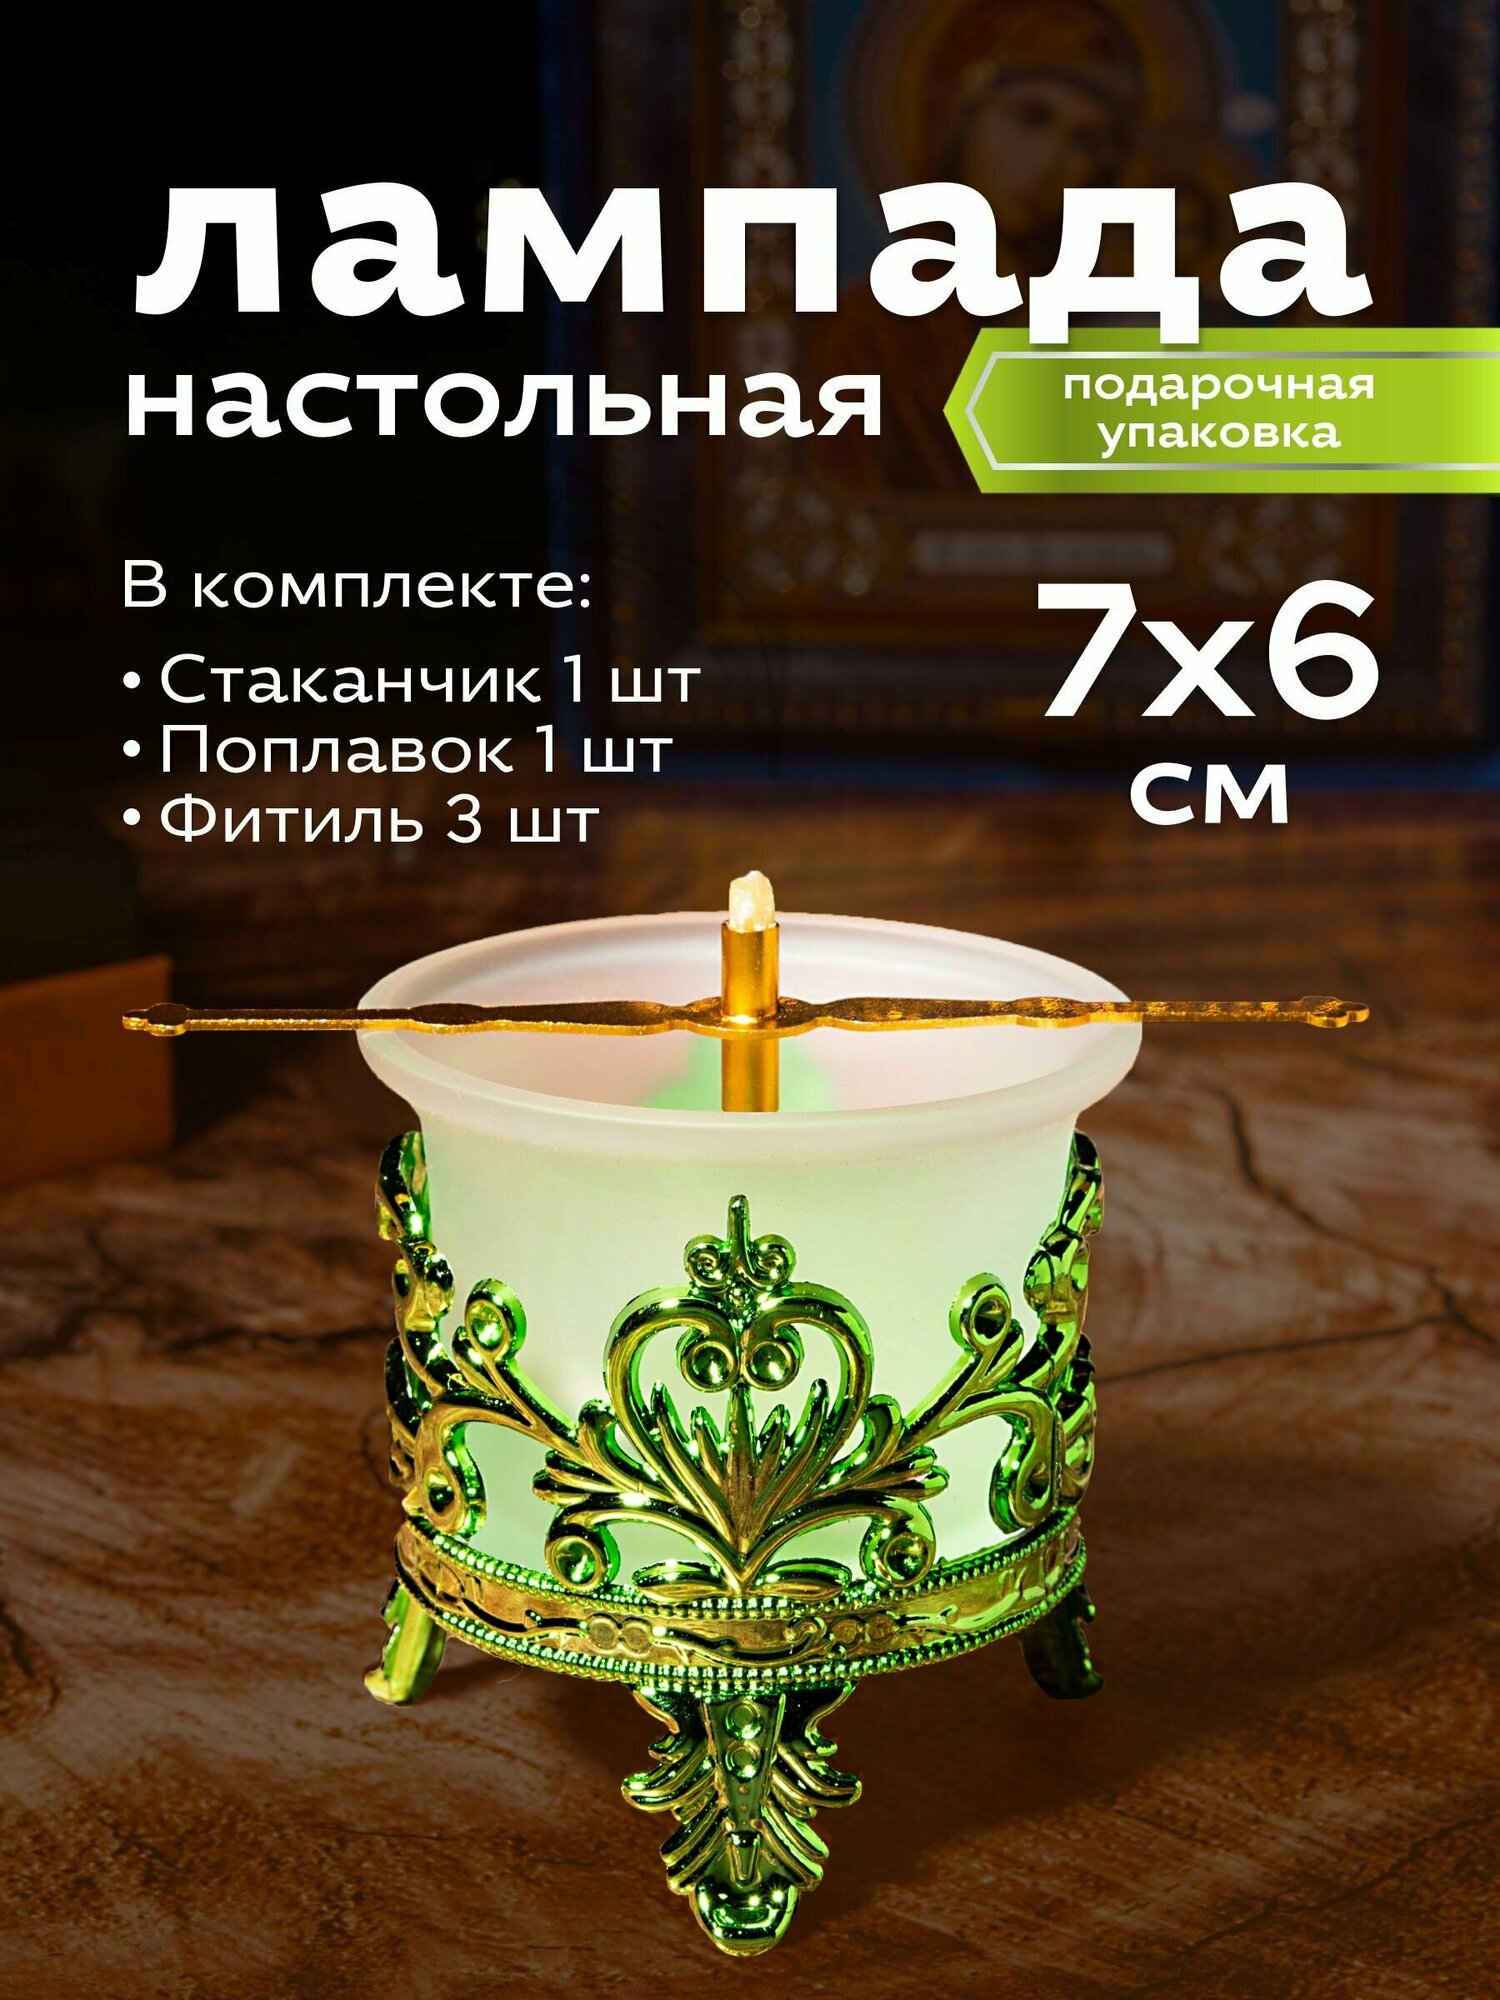 Набор Лампадный №14 - Лампада с подлампадником (цвет Зеленый) - 1 шт; Фитиль - 3 шт; Поплавок - 1 шт.